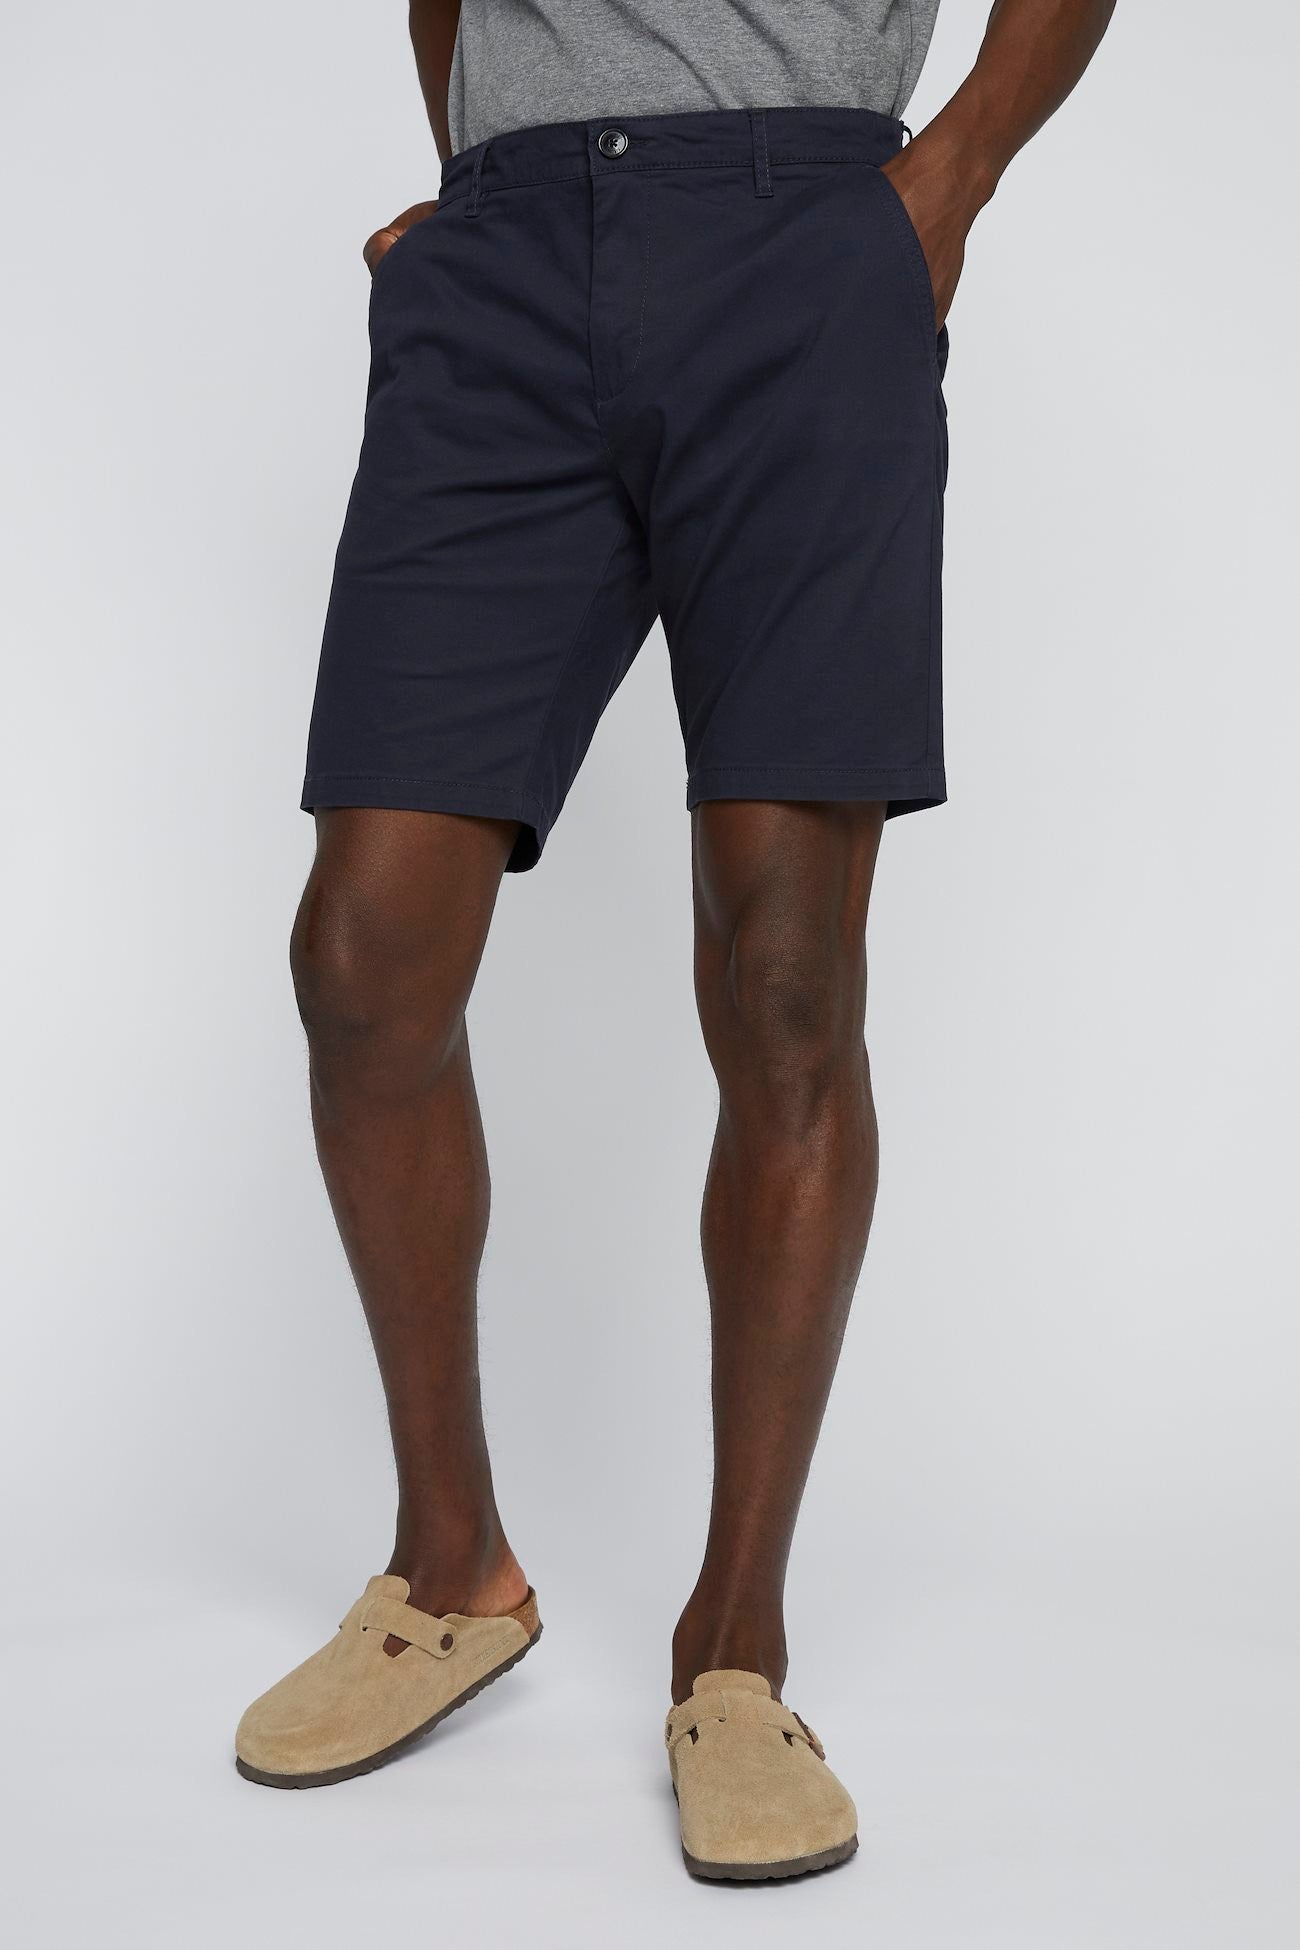 Matinique Dark Navy Cotton Shorts